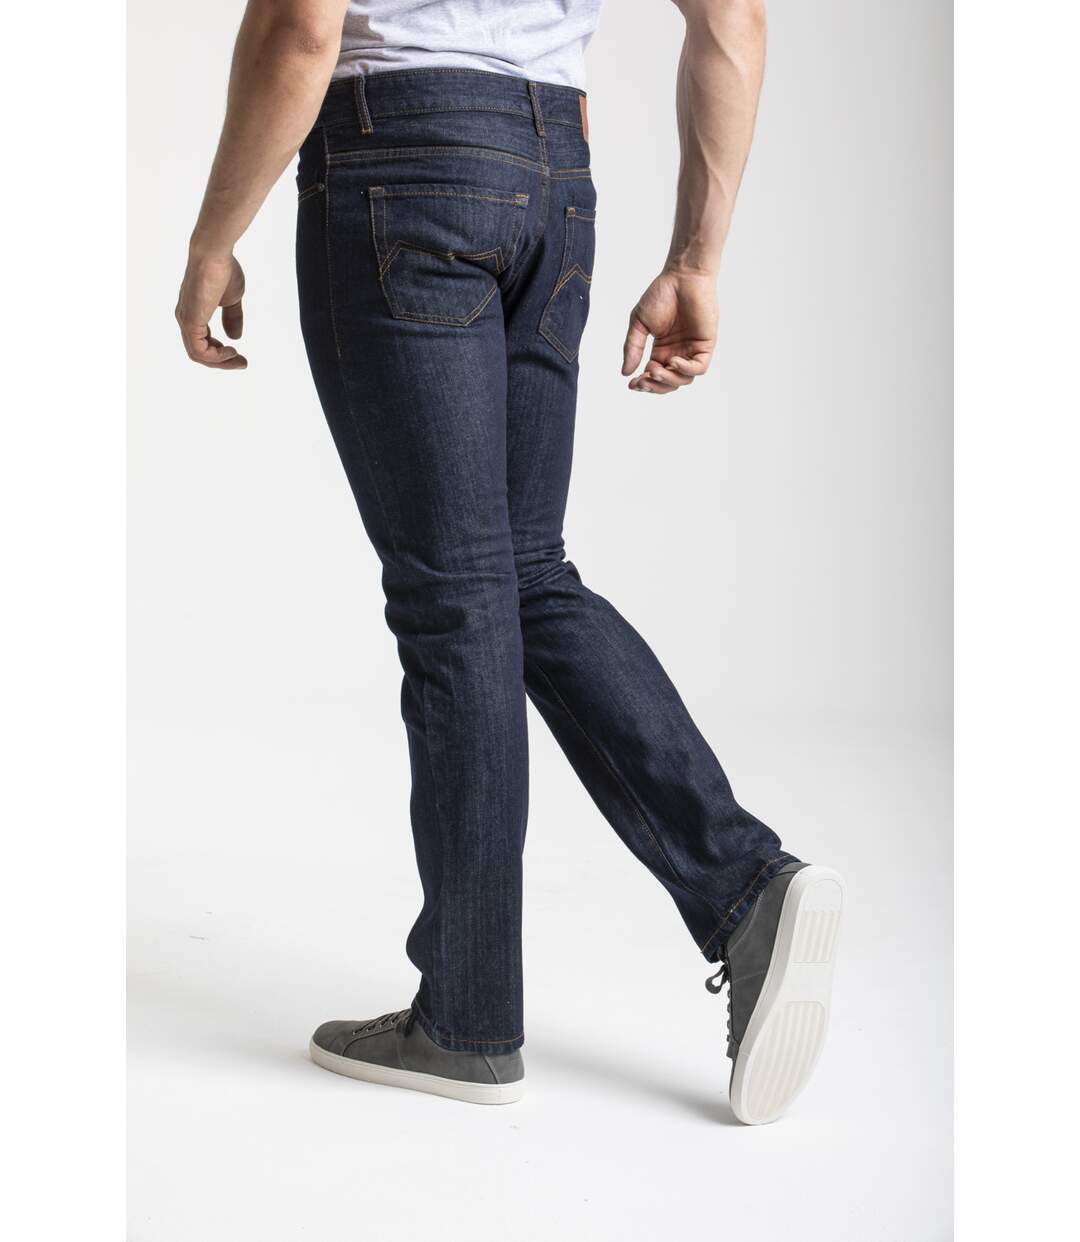 Jeans RL70 coupe droite confort coton brut marine